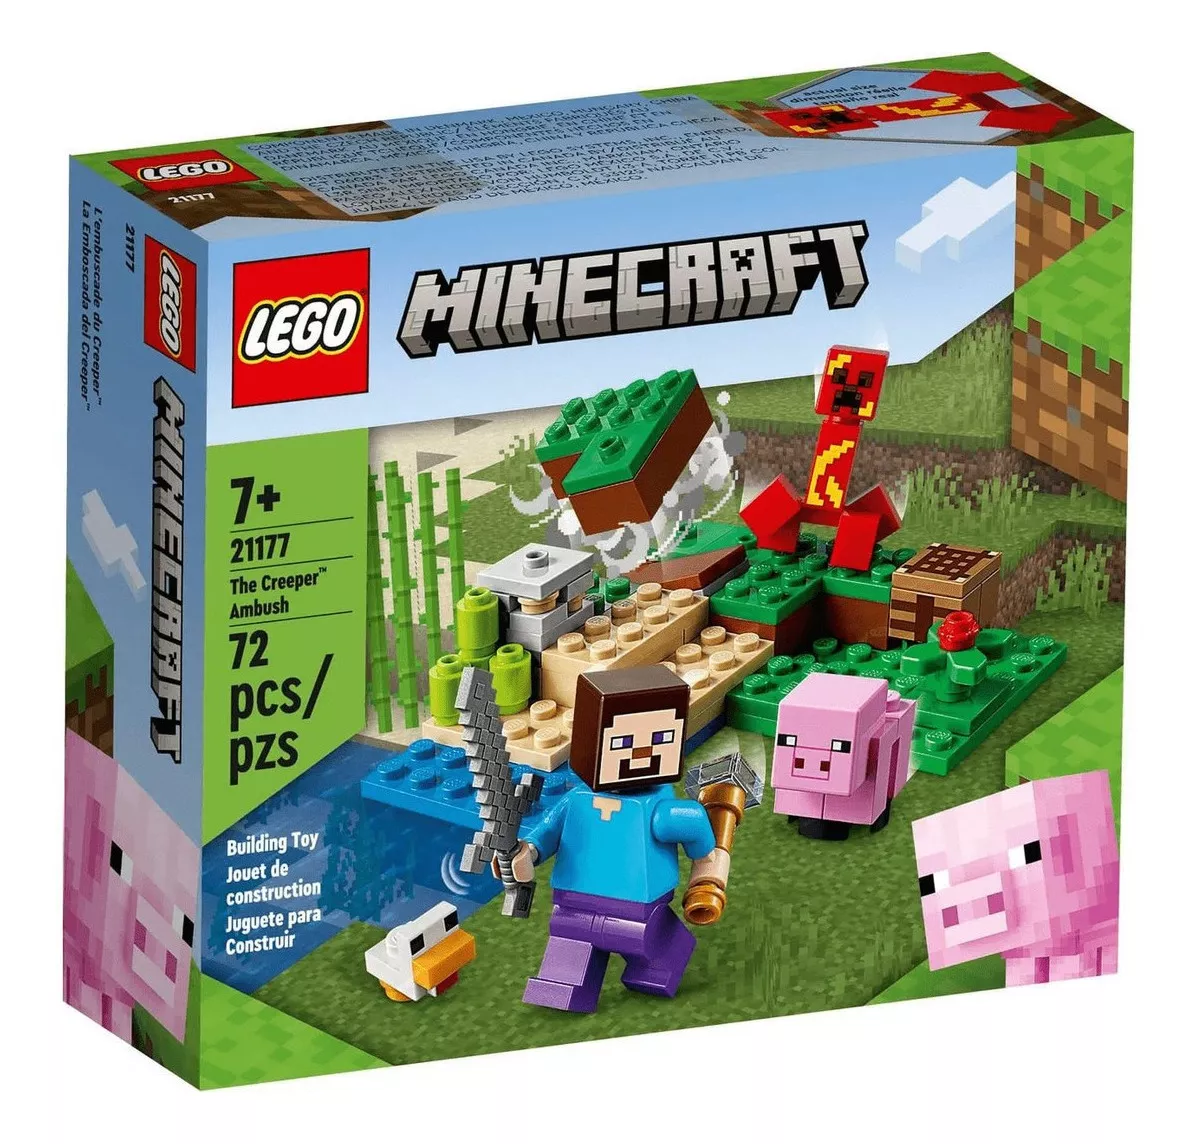 Brinquedo Lego Minecraft 72 Pecas Emboscada Do Creeper 21177 Quantidade De Peças 72